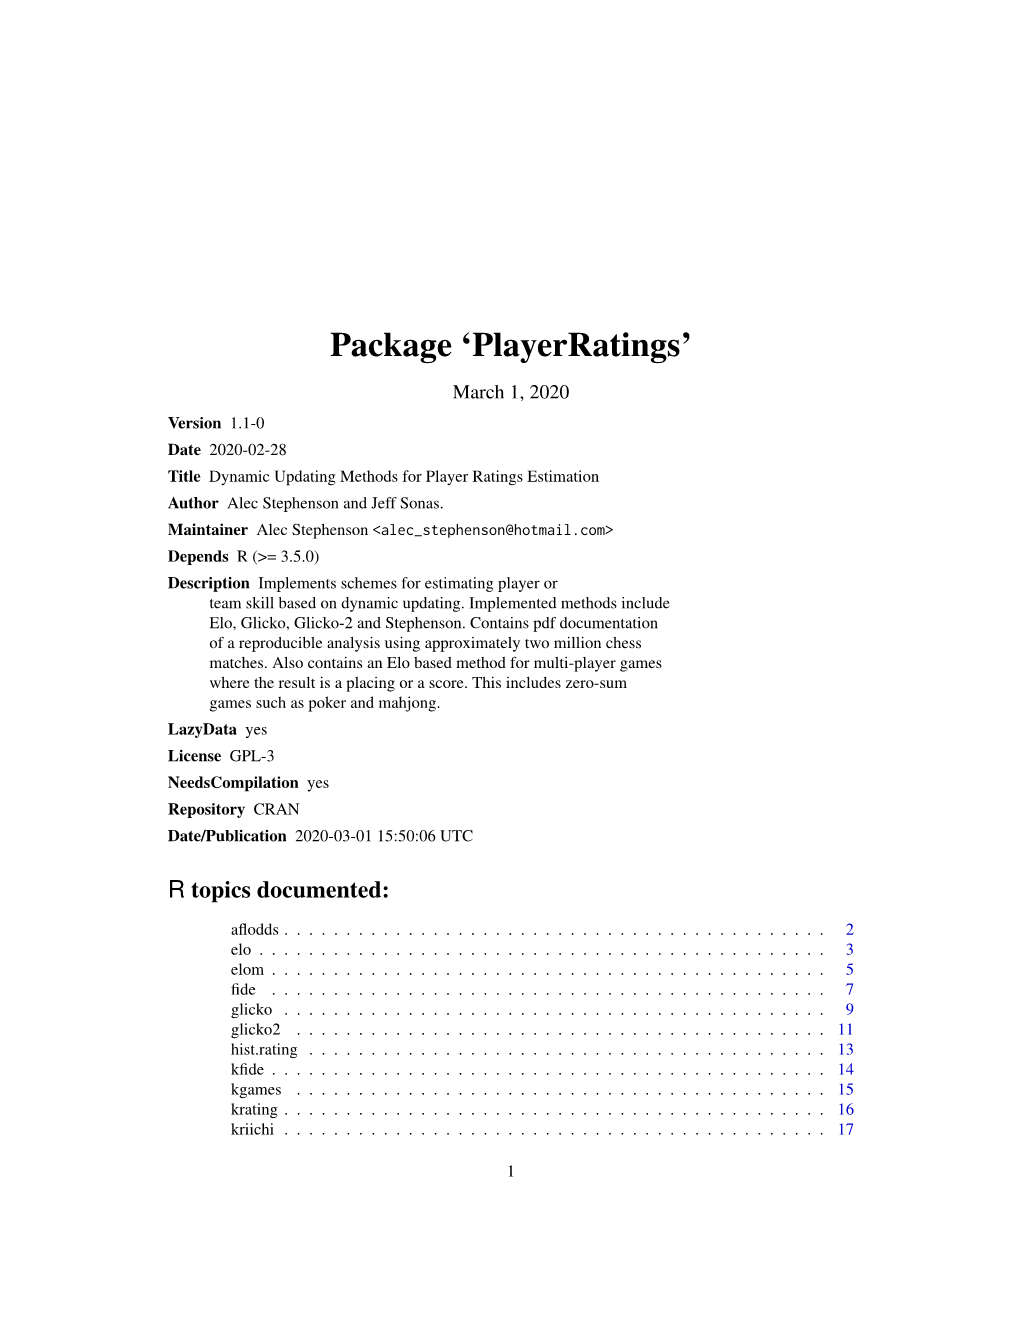 Package 'Playerratings'